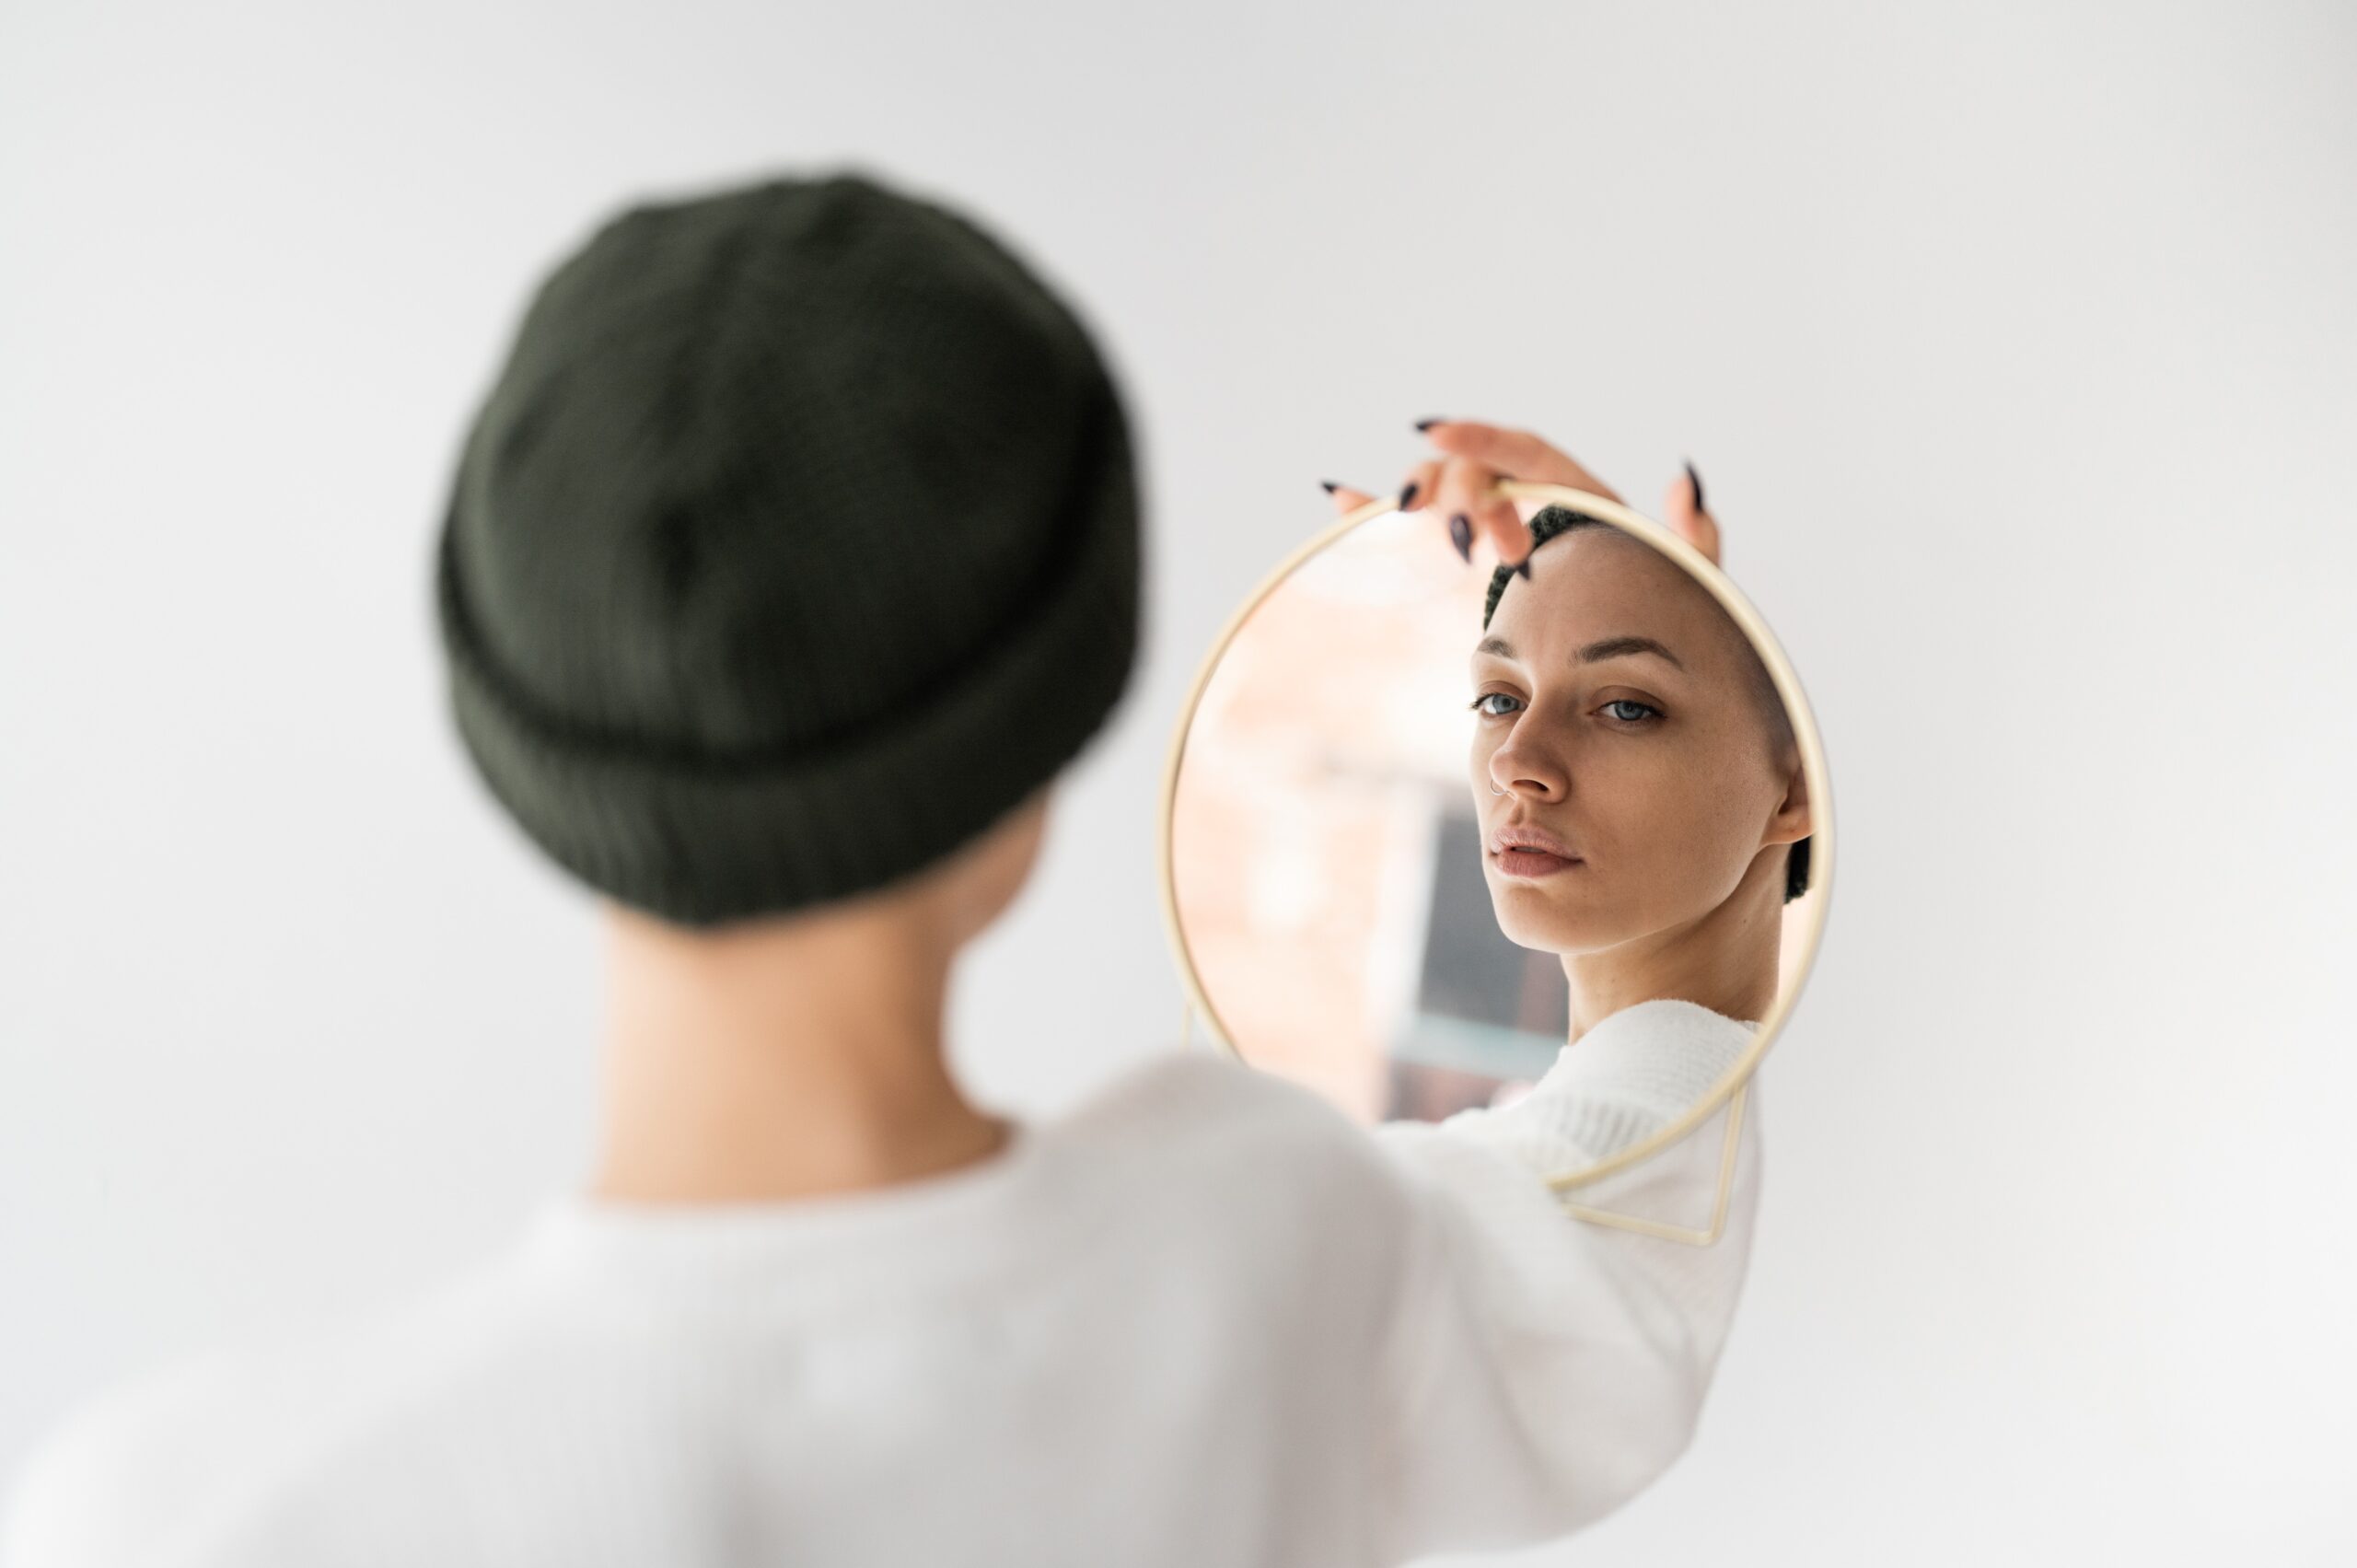 Una mujer se mira en un espejo redondo que ella misma sostiene.